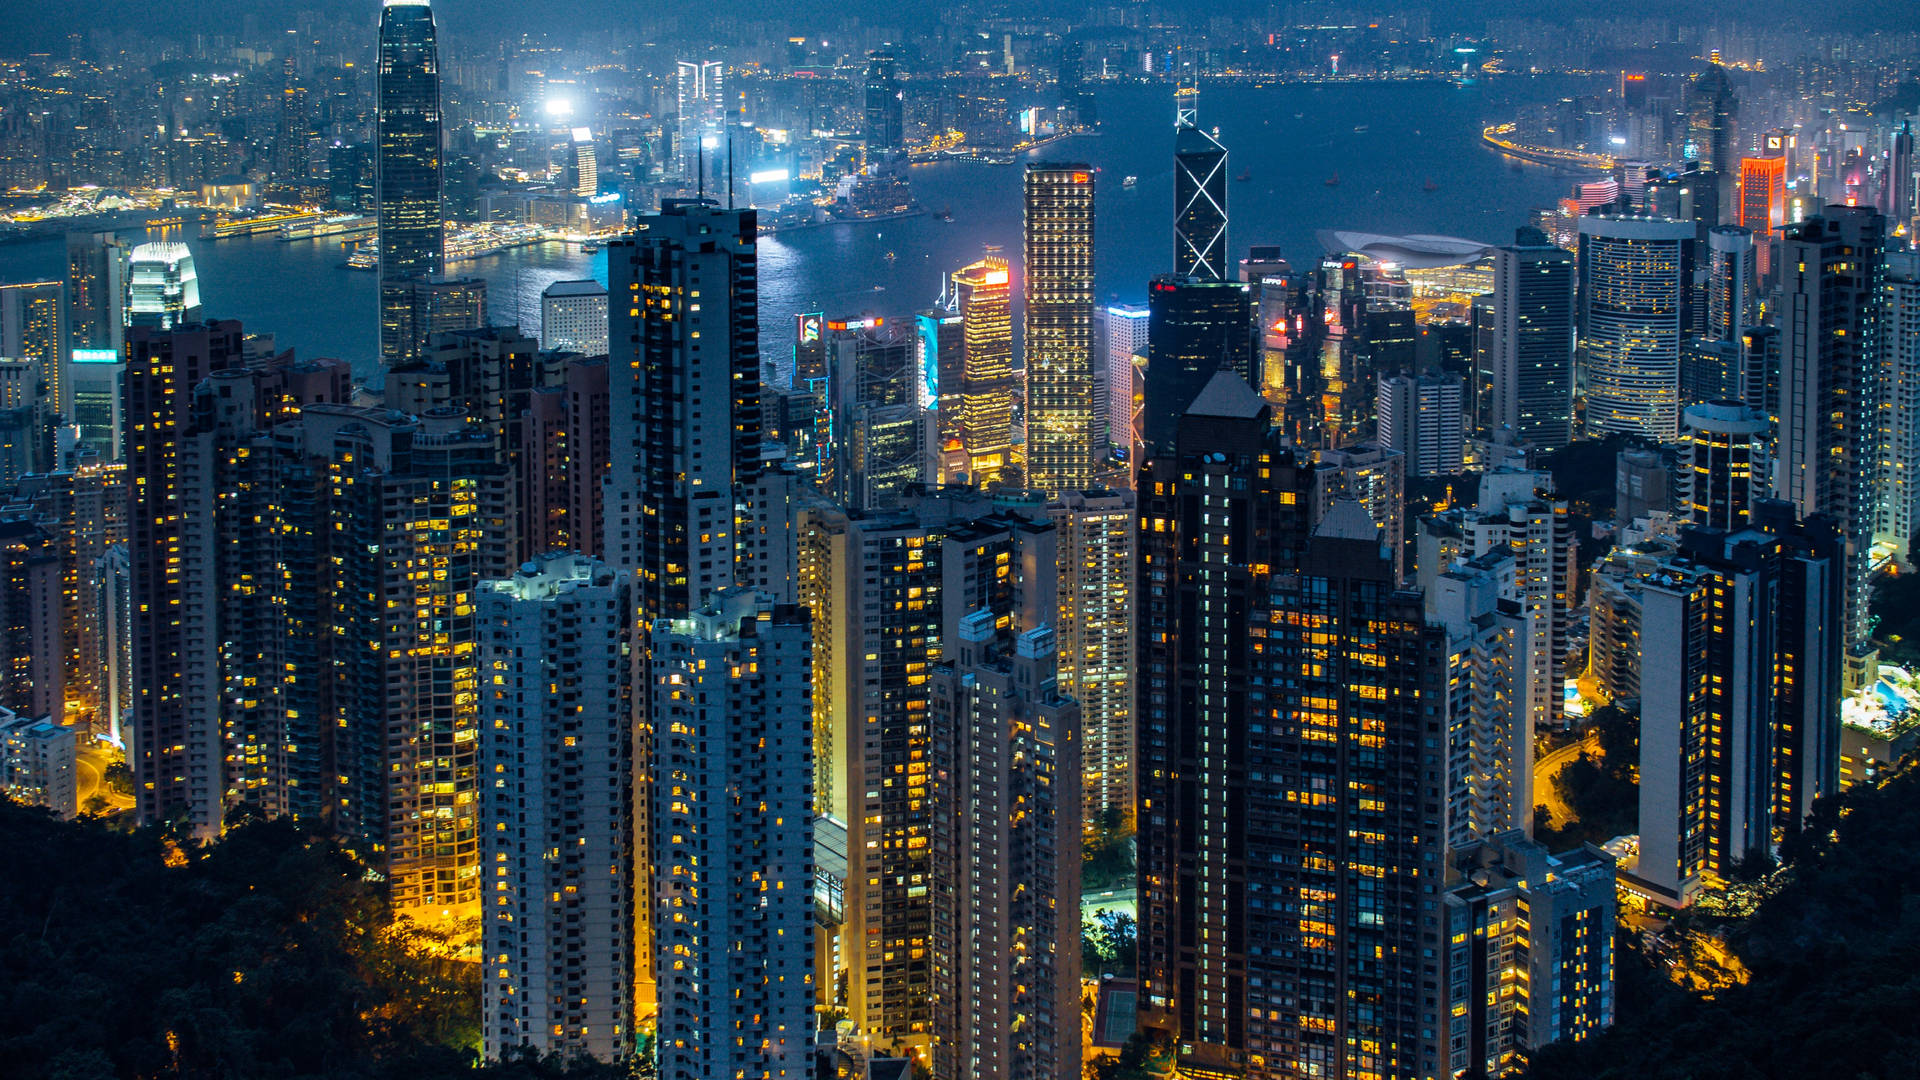 Download 4k Ultra Hd City Of Hong Kong Skyline Wallpaper 